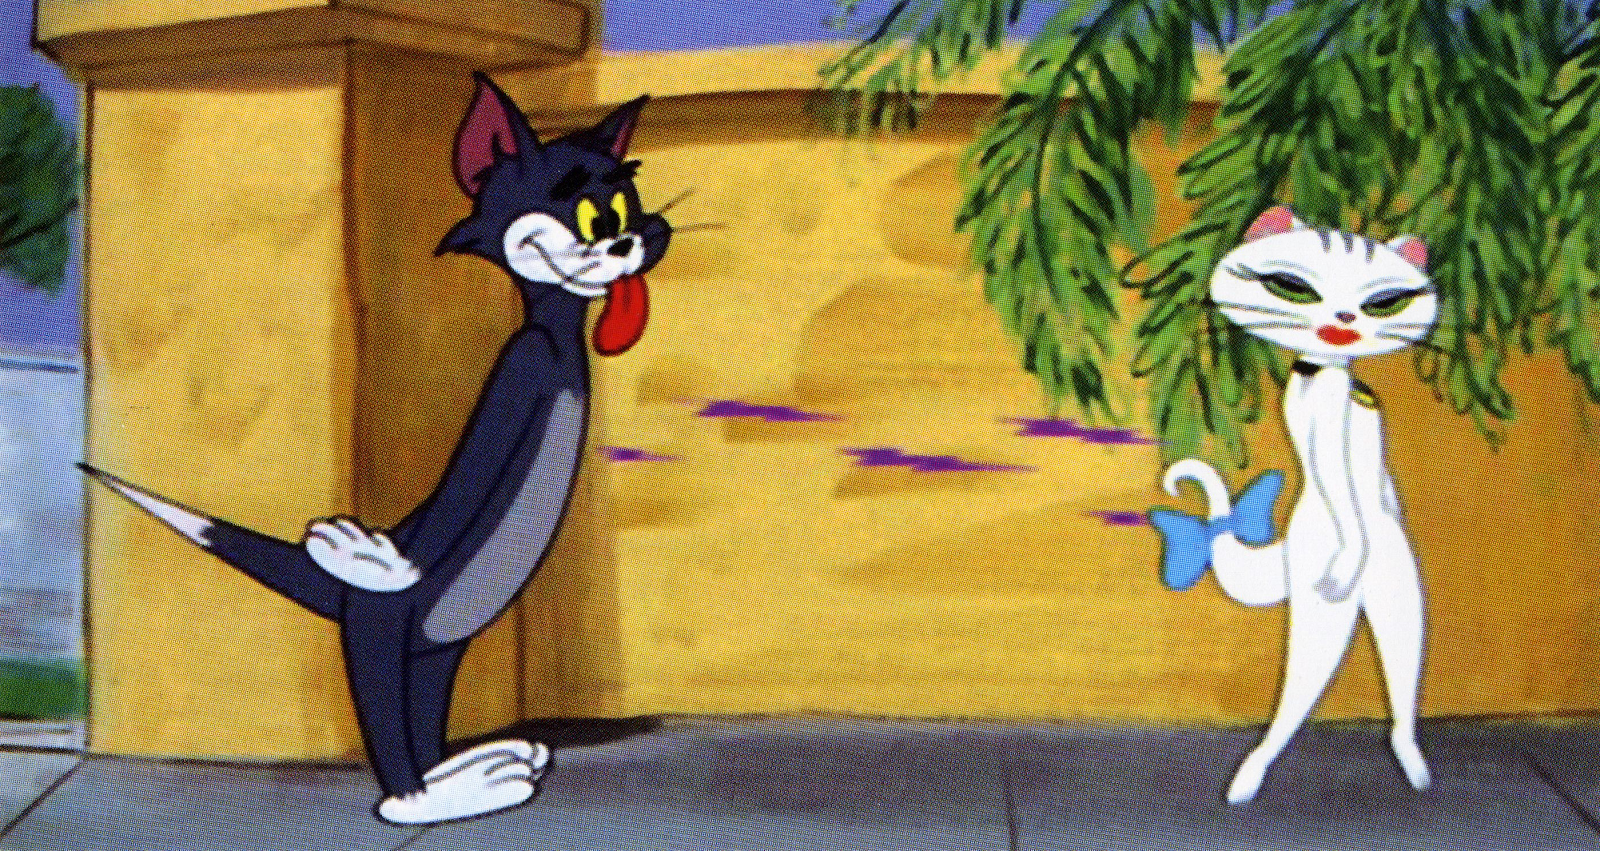 Suốt đời đuổi bắt nhau, đây là lần hiếm hoi Tom và Jerry đứng cùng chiến tuyến: Cùng bị người yêu bội phản, tuyệt vọng đến mức tự tử - Ảnh 2.